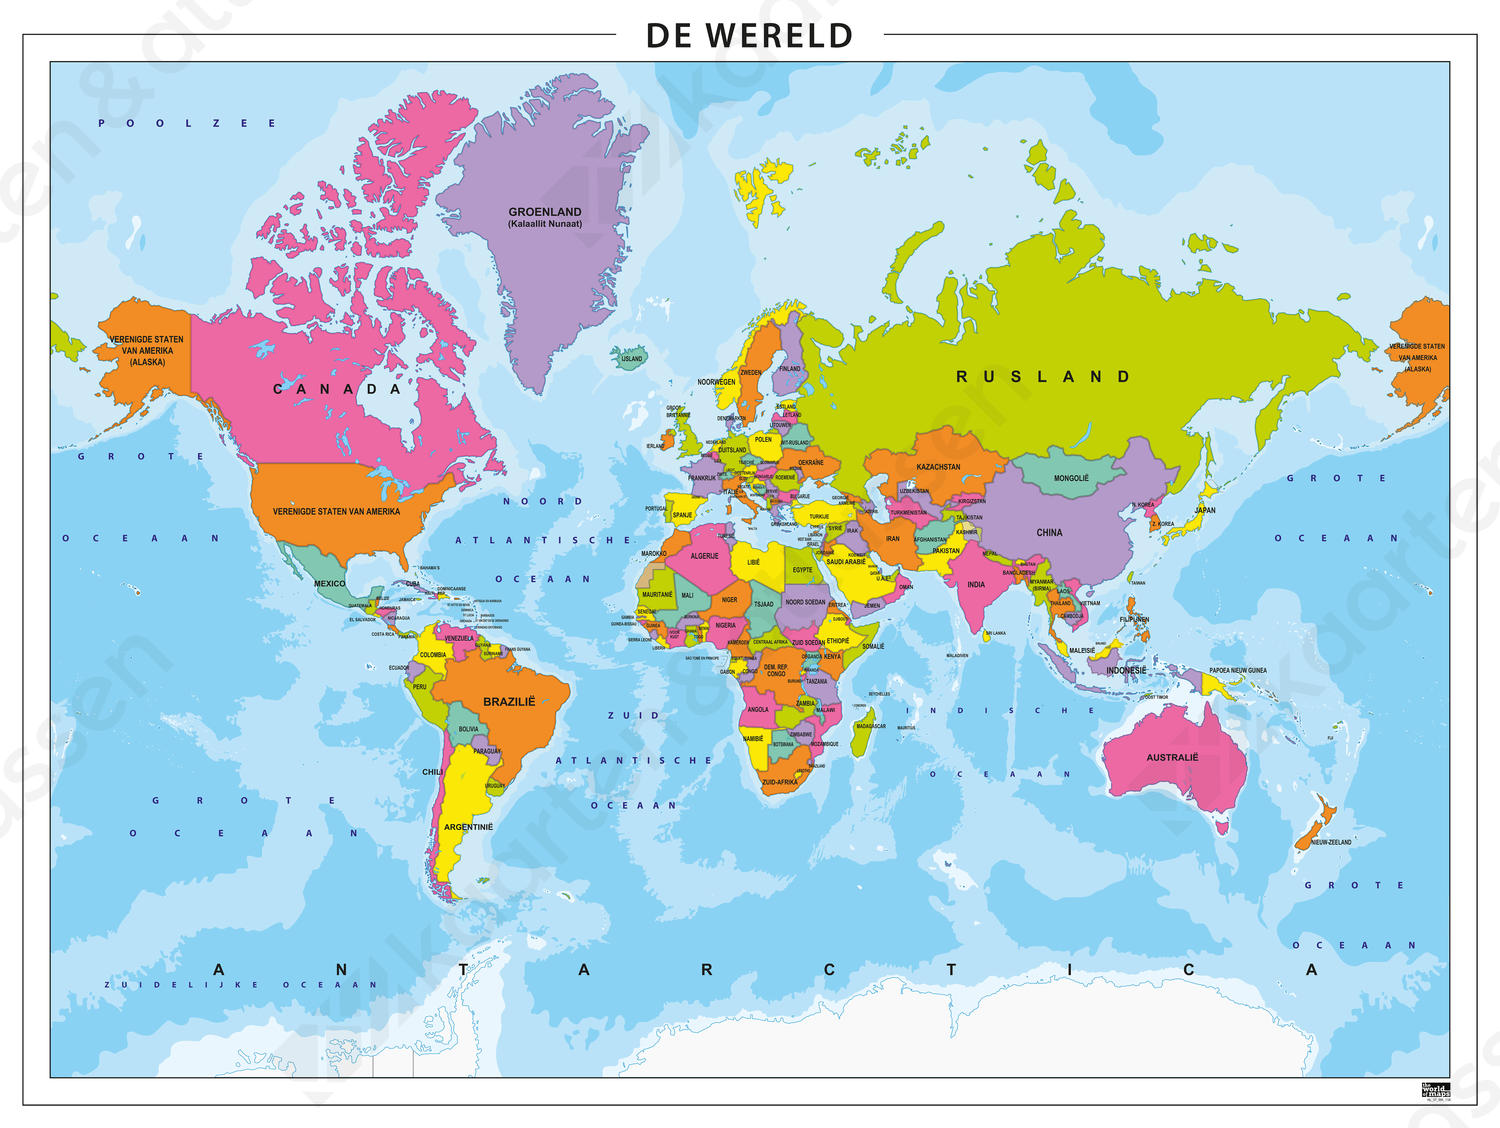 Simpele en zeer duidelijke wereldkaart